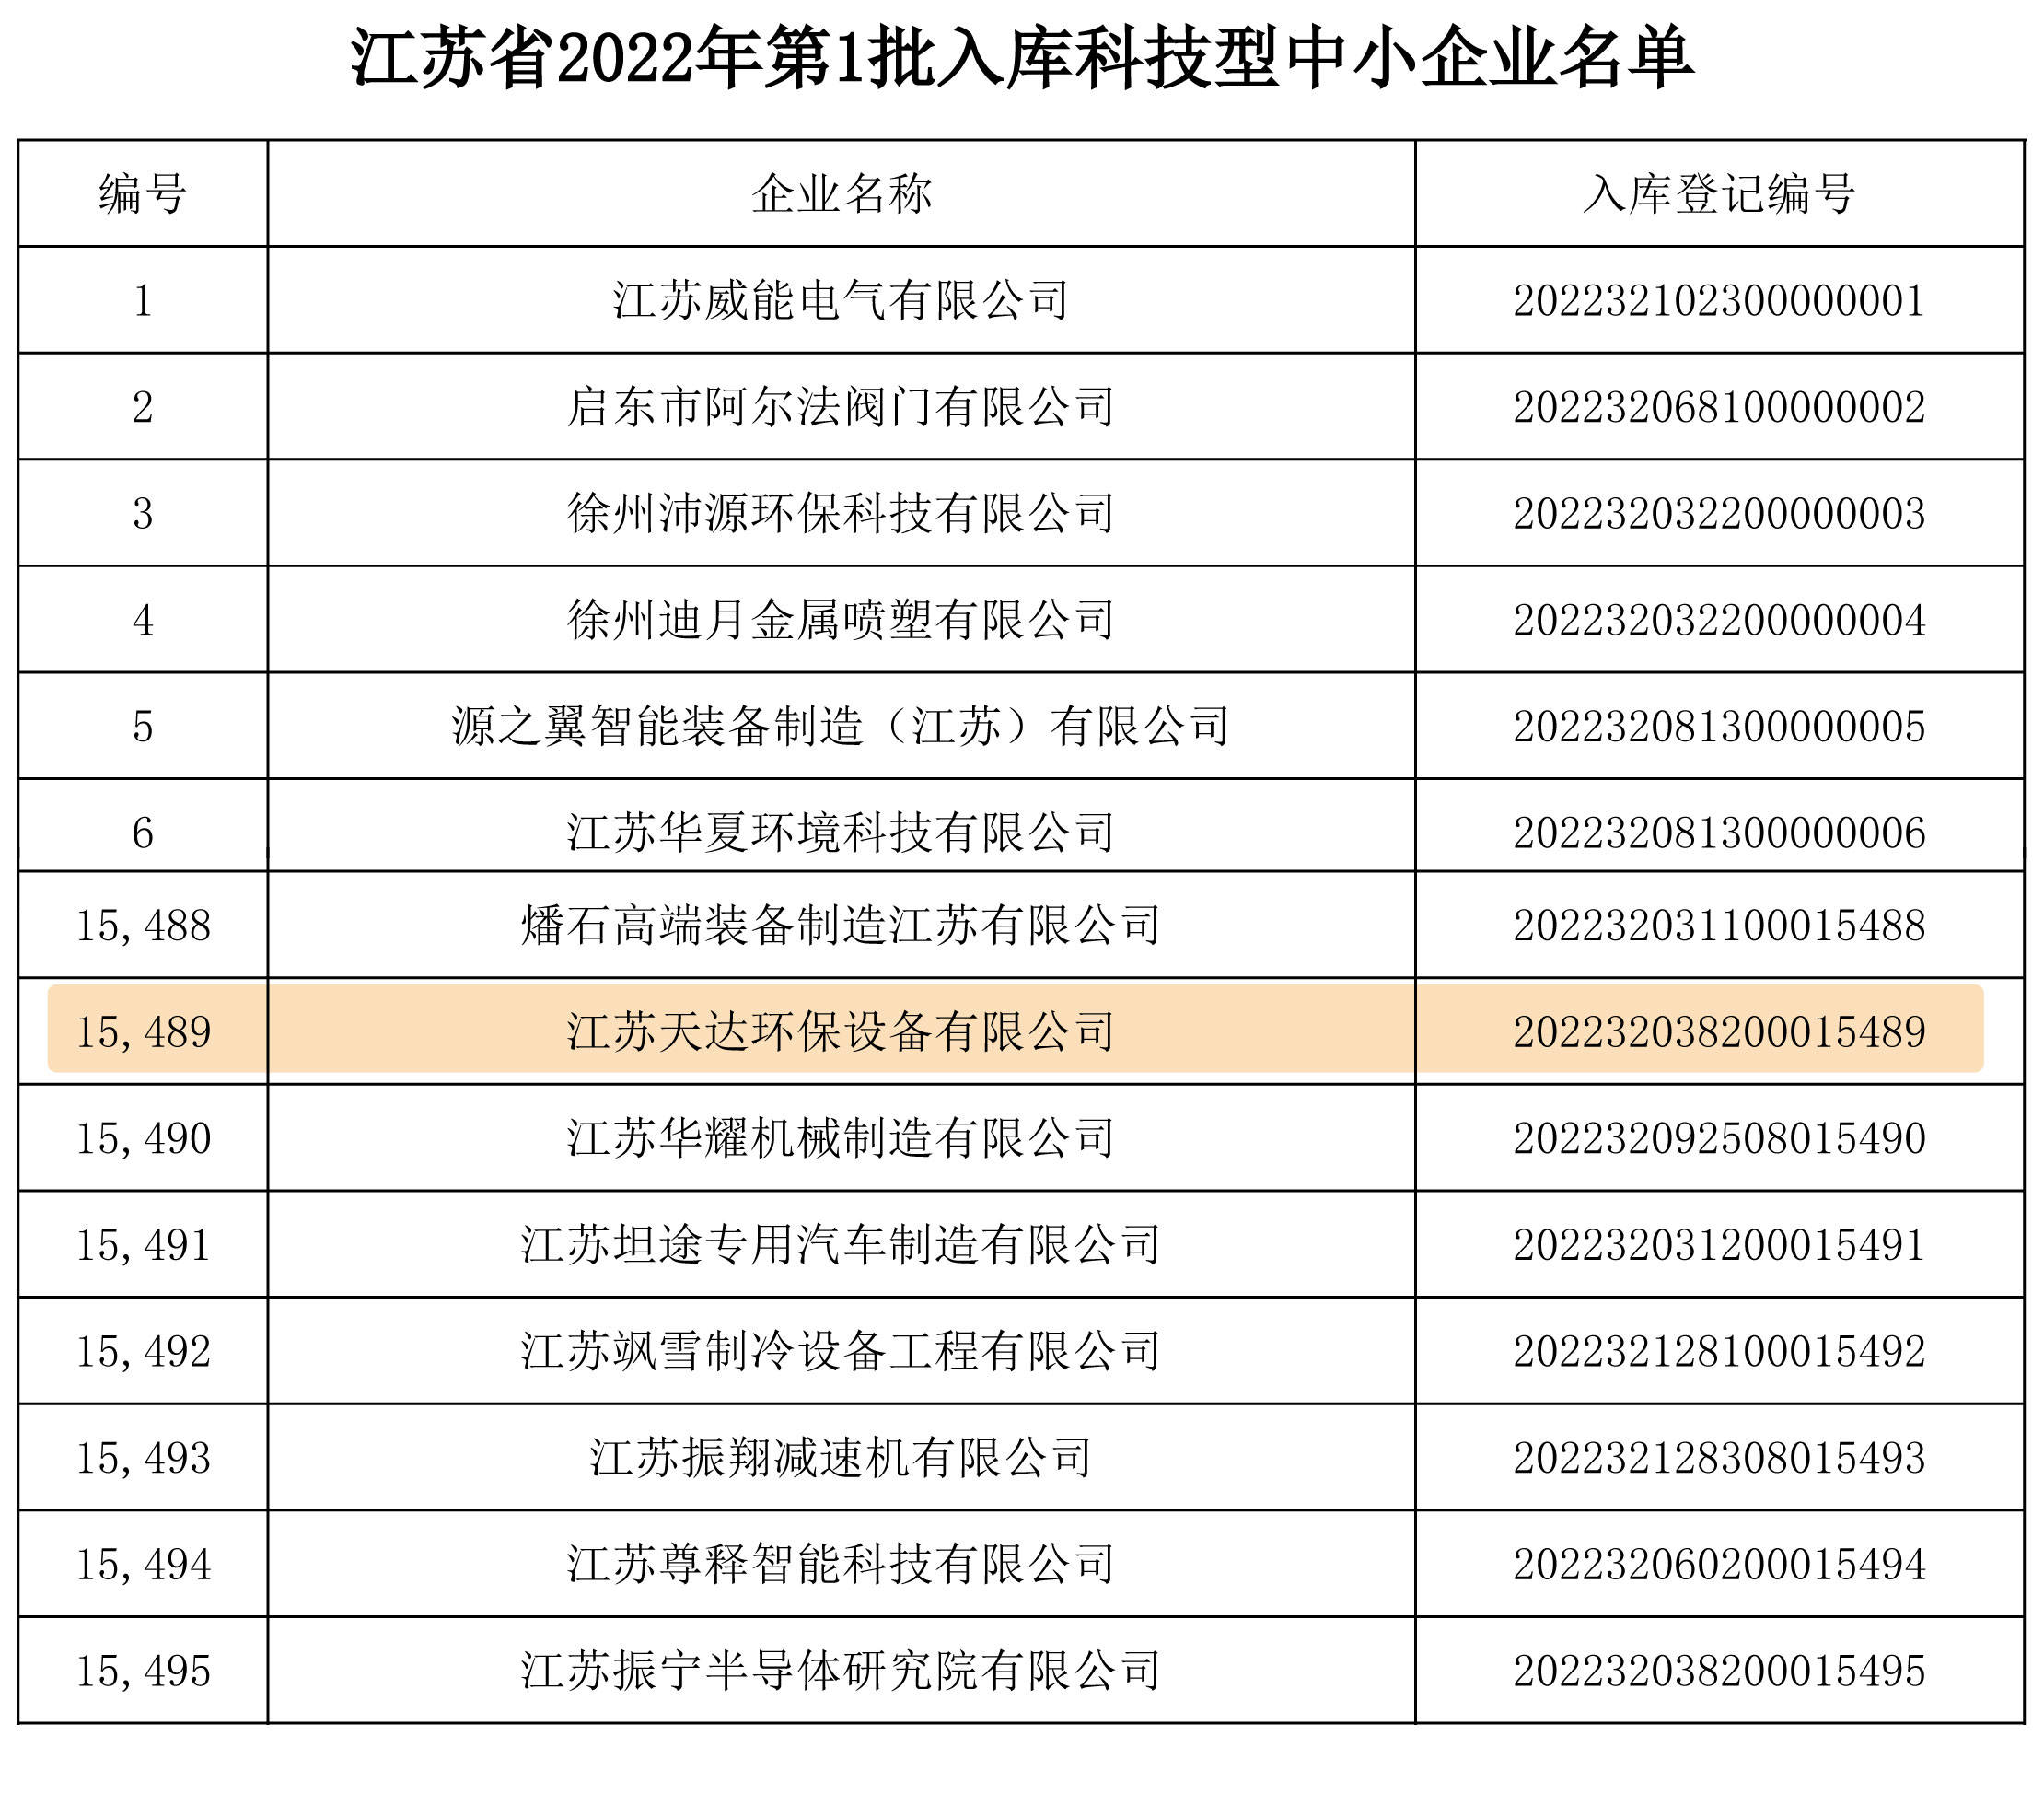 江苏天达环保设备有限公司荣誉入选江苏省科技型中小企业BOB真人APP